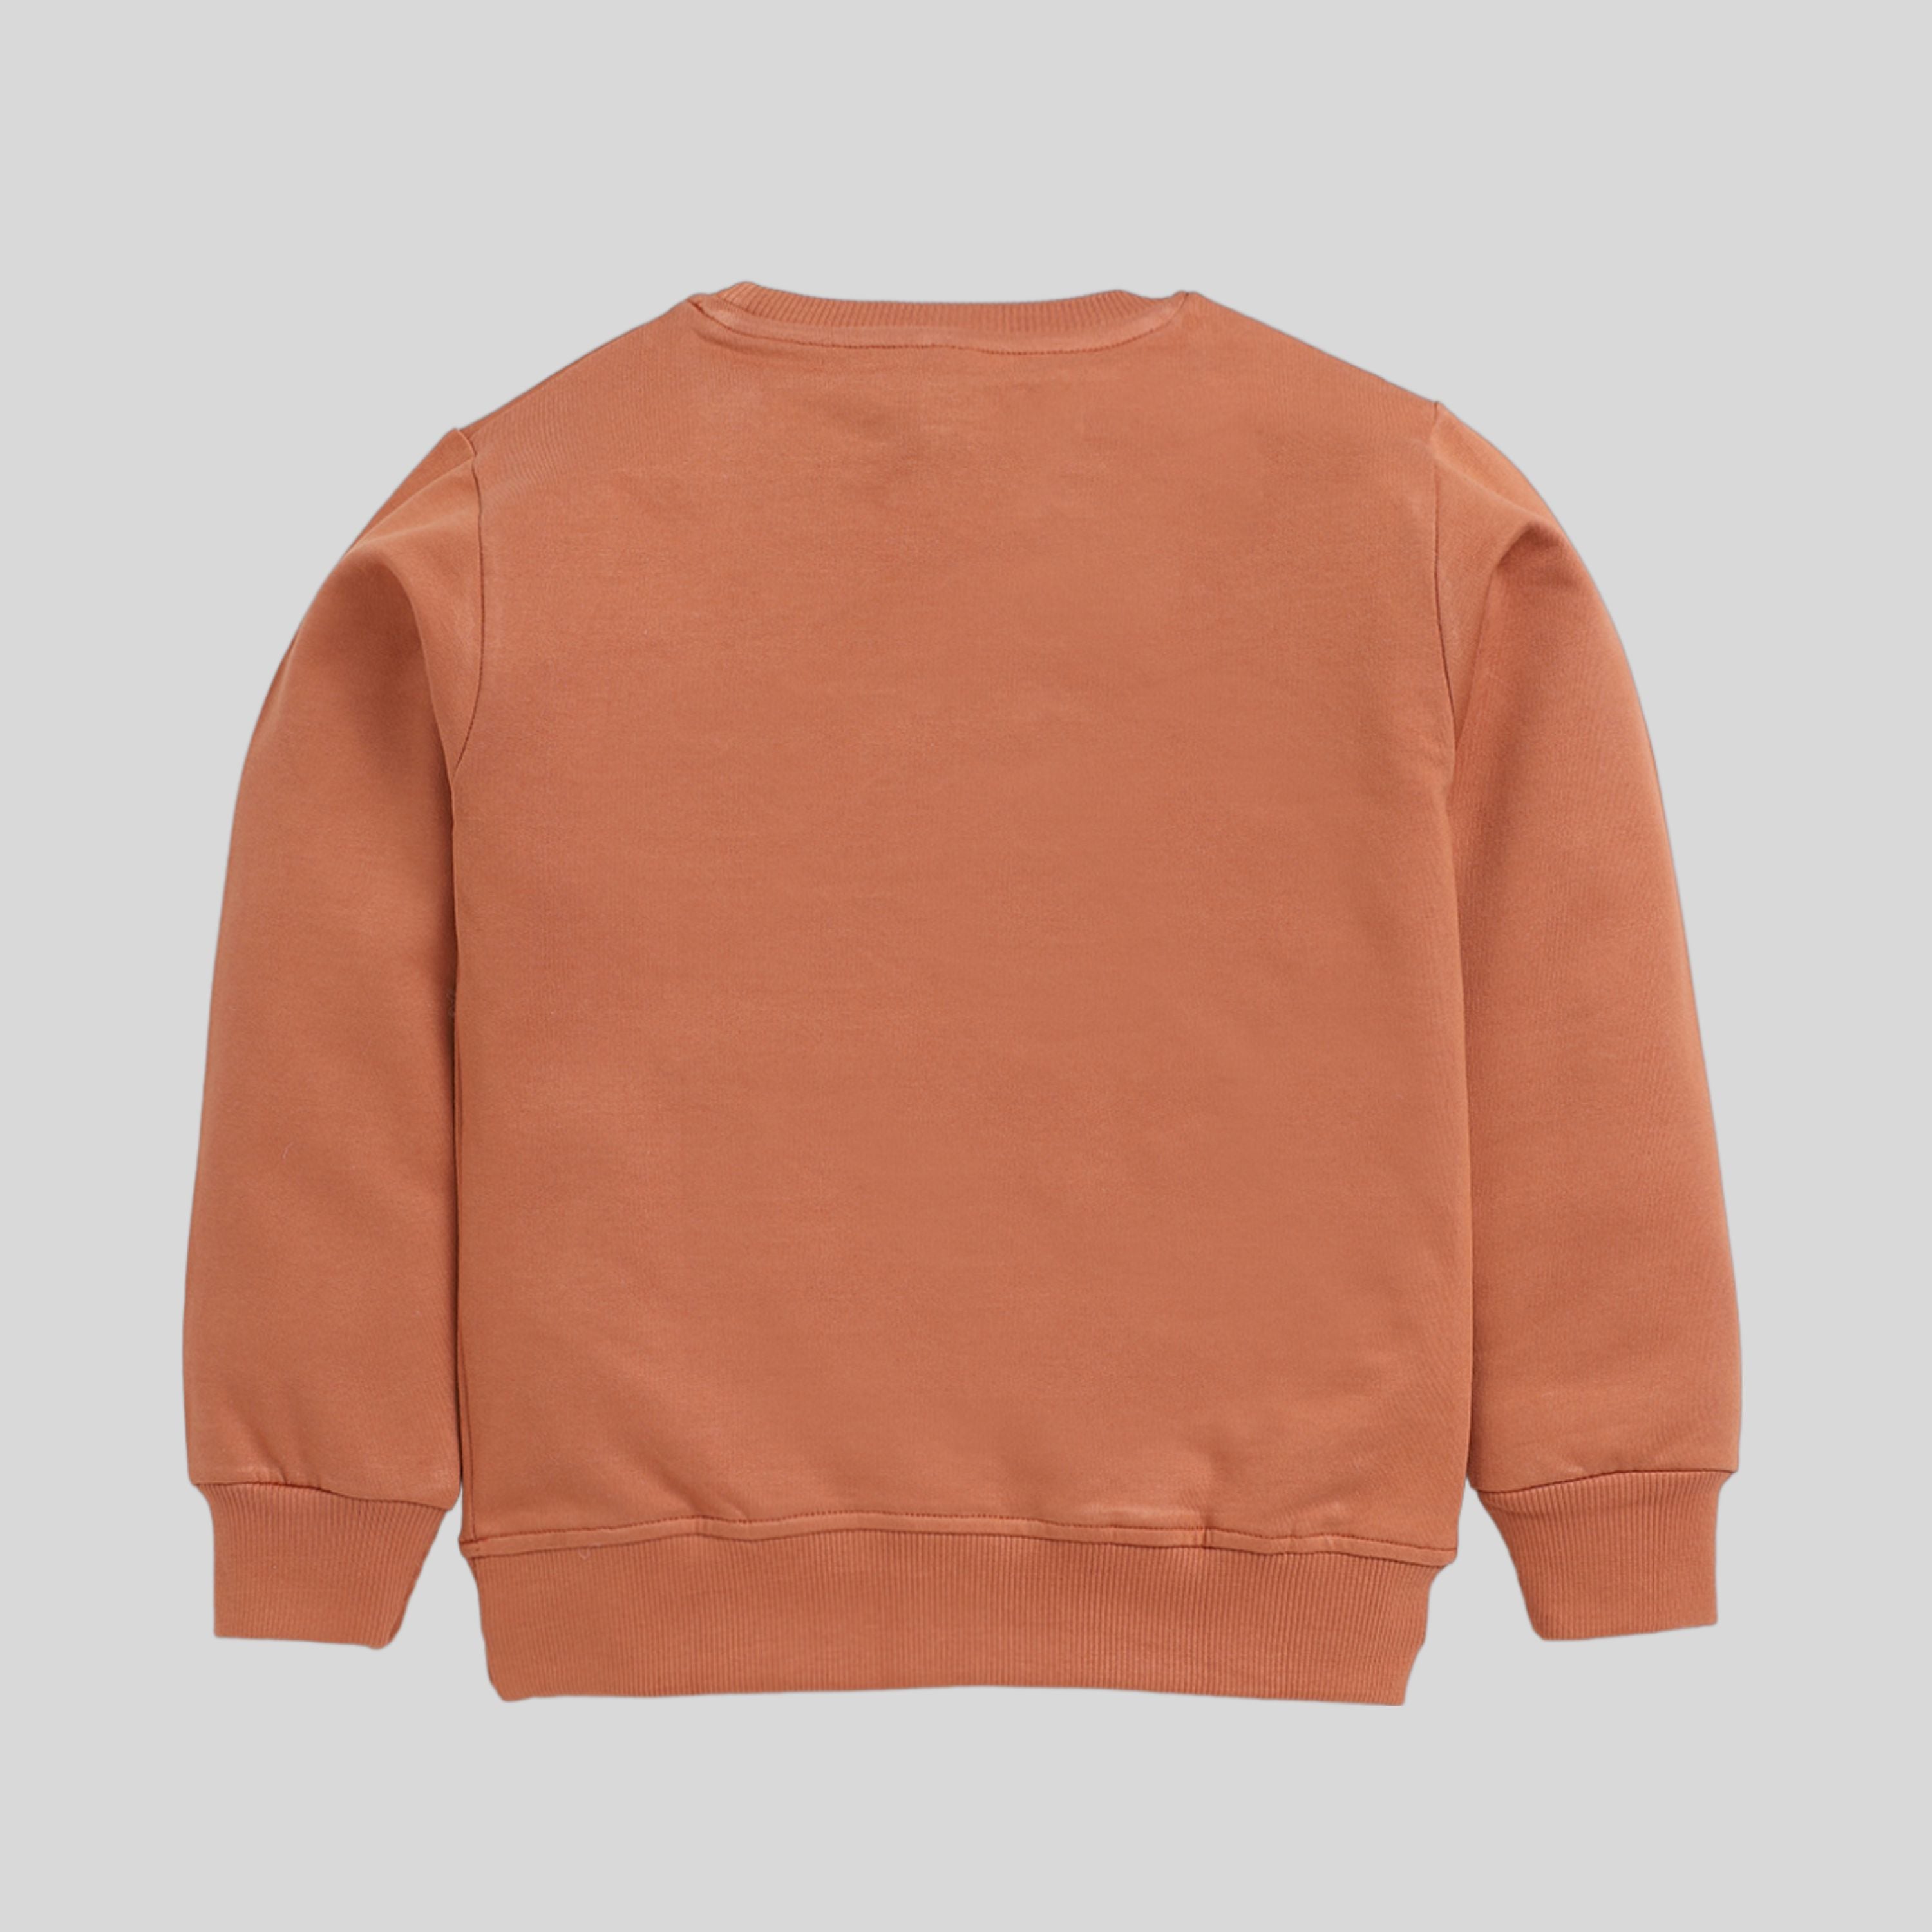 Printed Sweatshirt For Boy- Brown